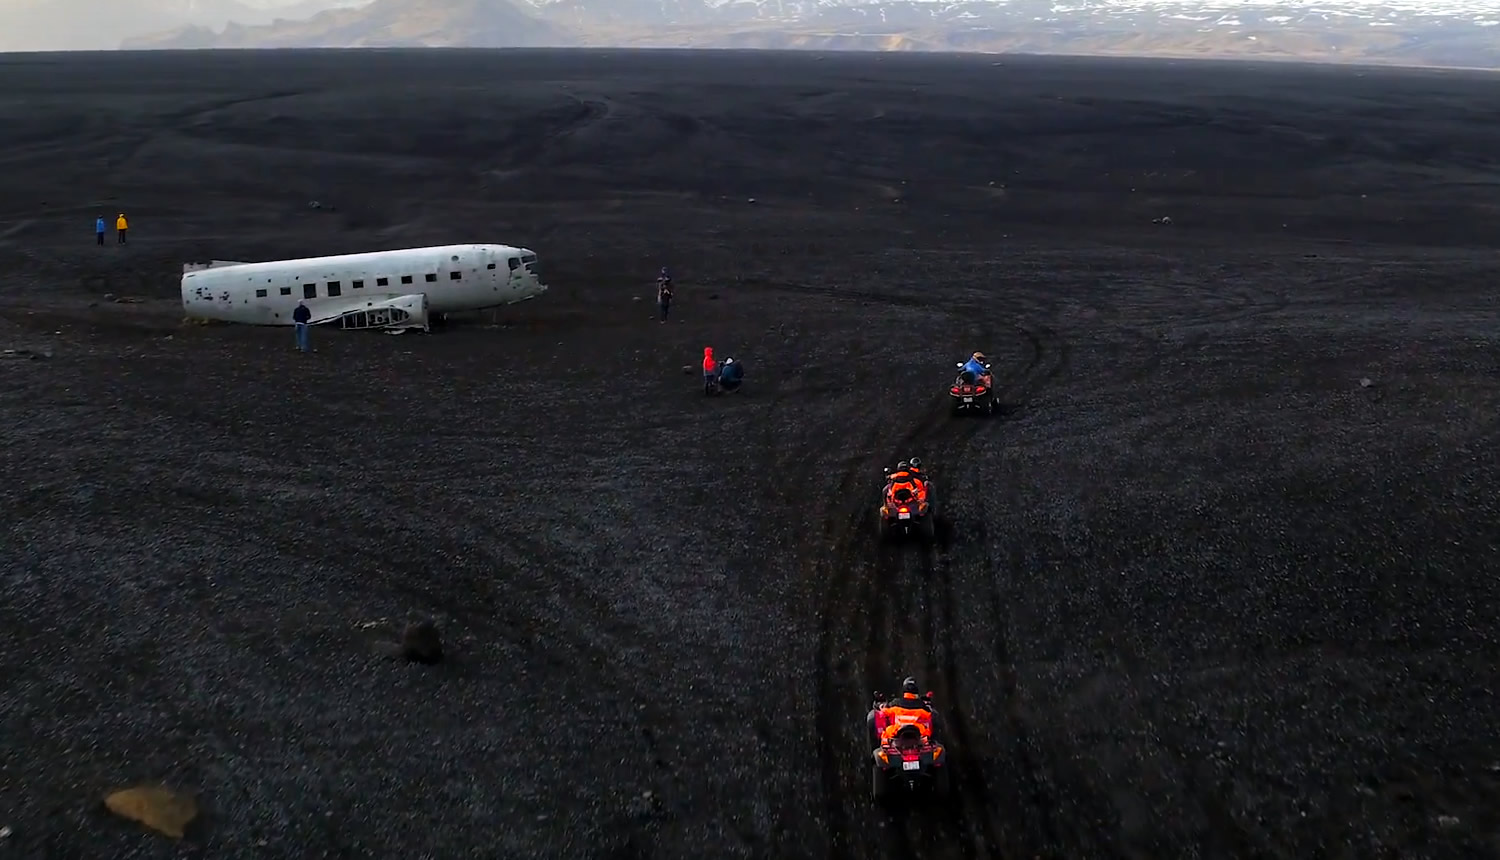 Explorez le Sud de l'Islande en Quad | Arrêt à l'avion échoué DC-3